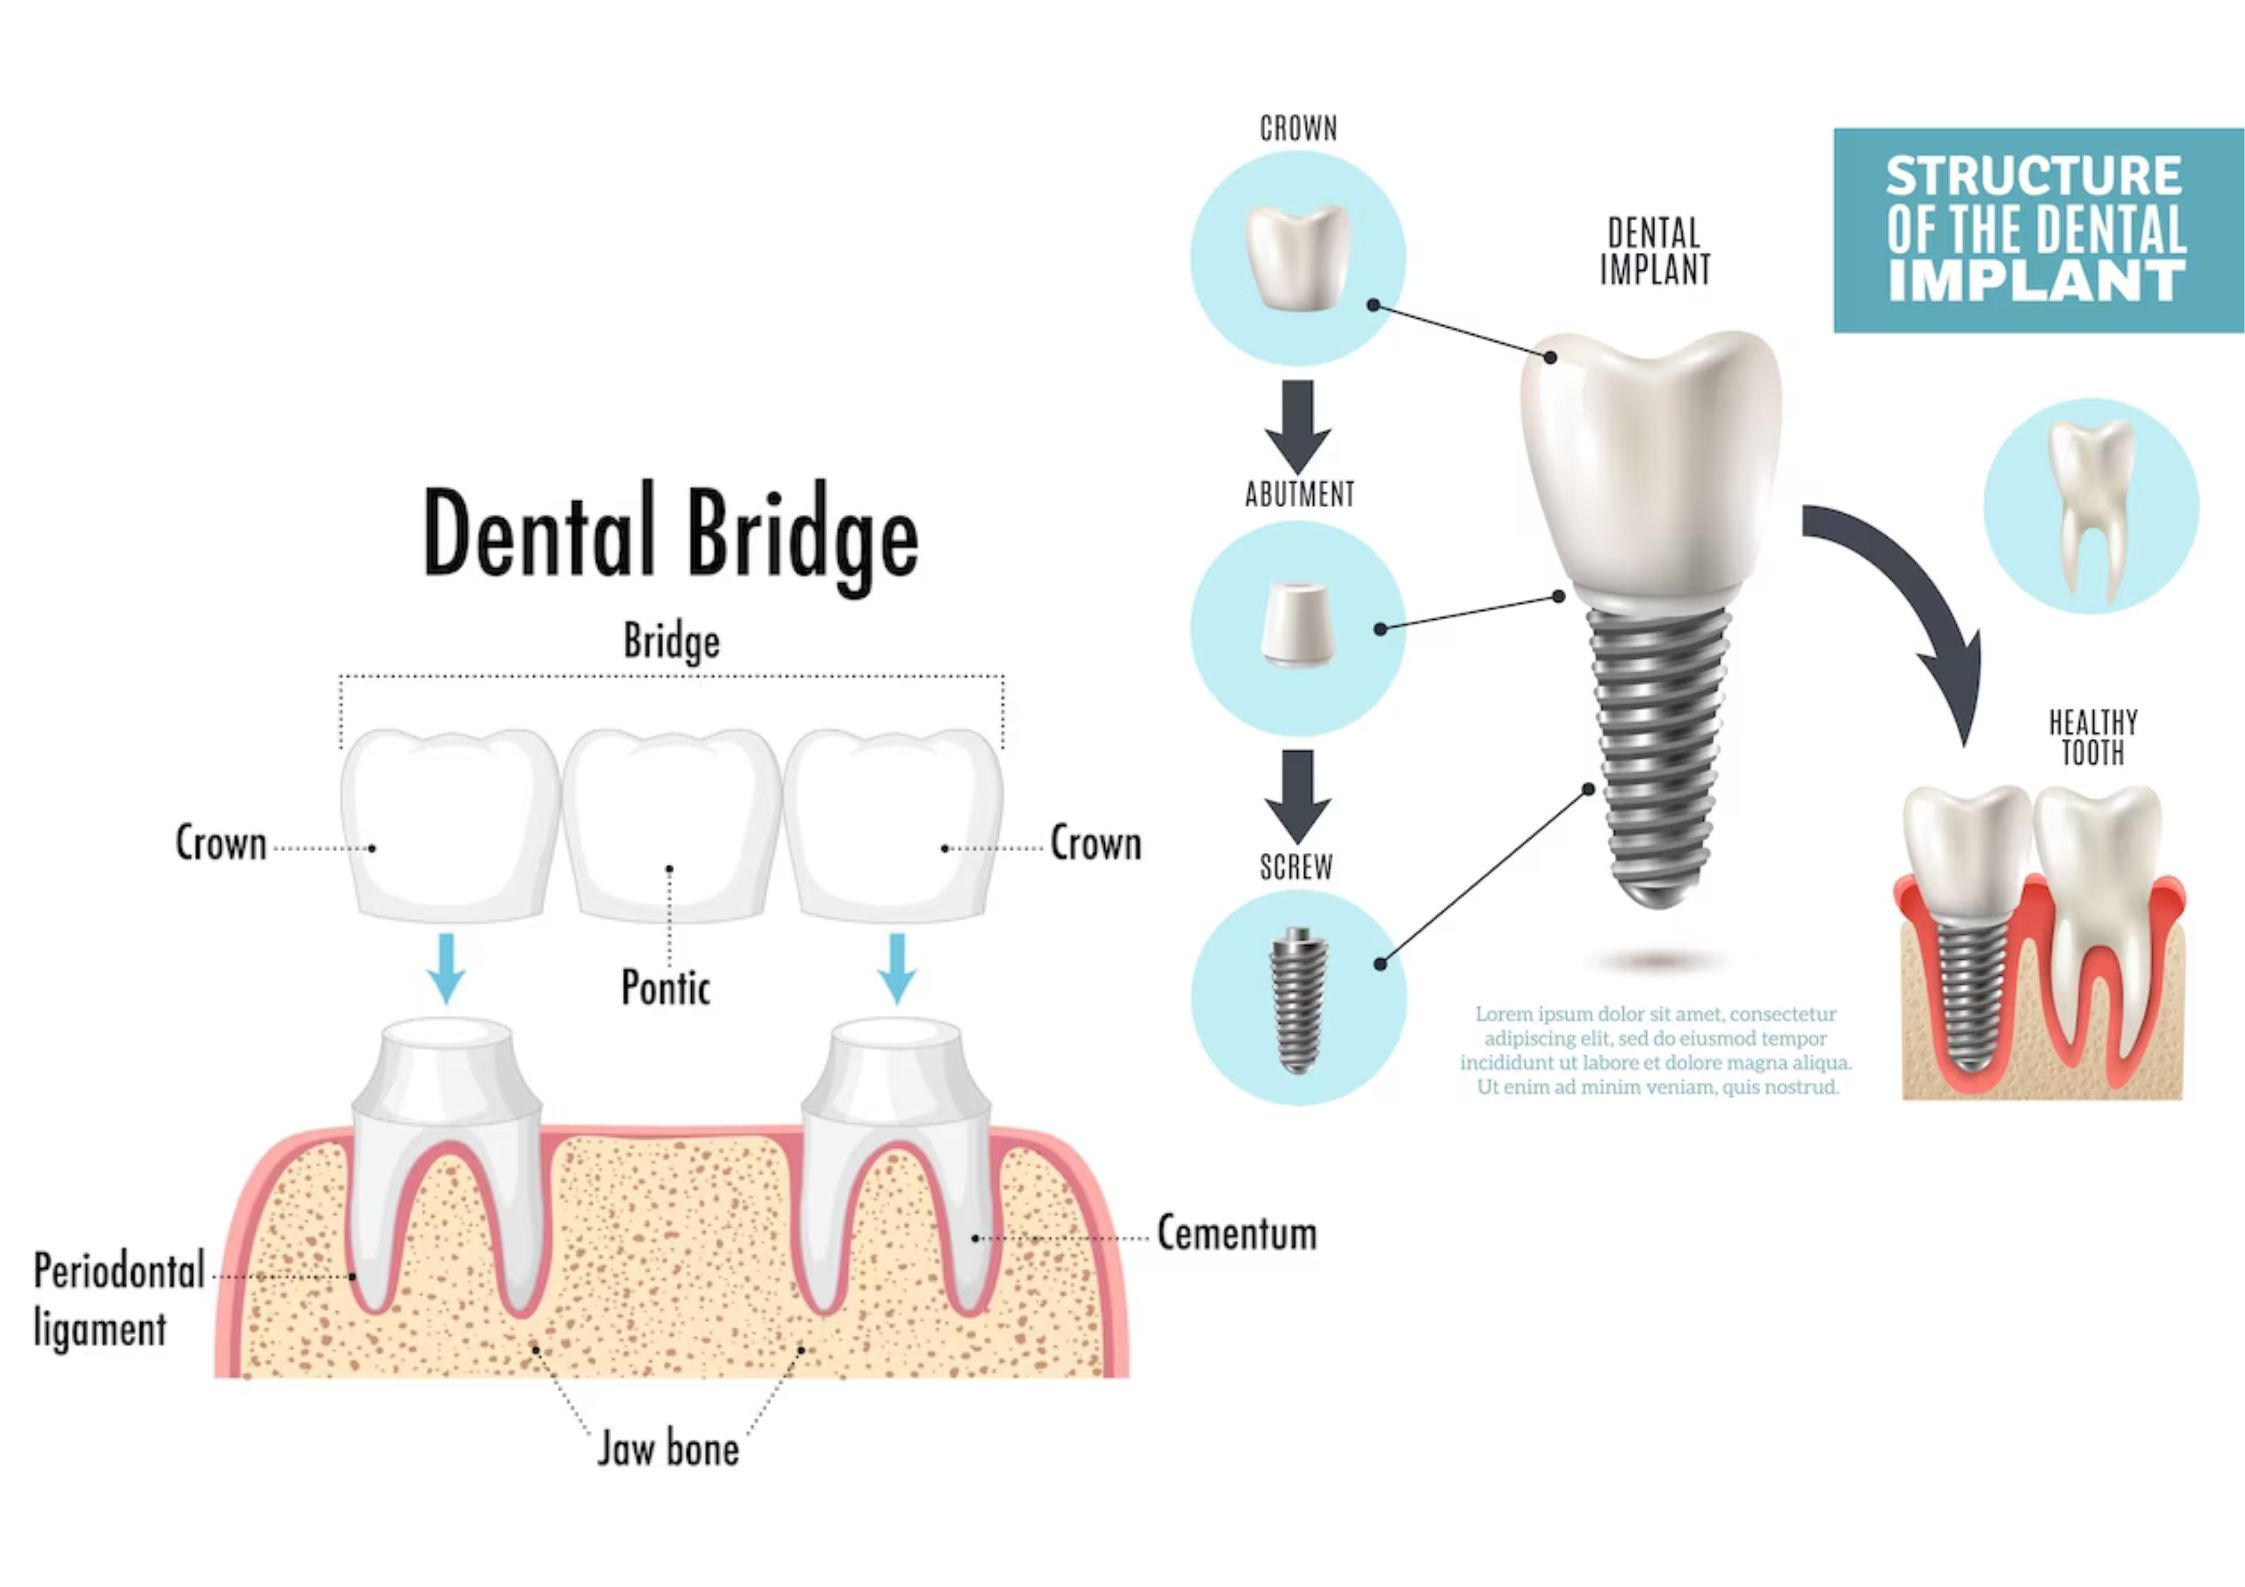 A comparison of dental implants and bridges